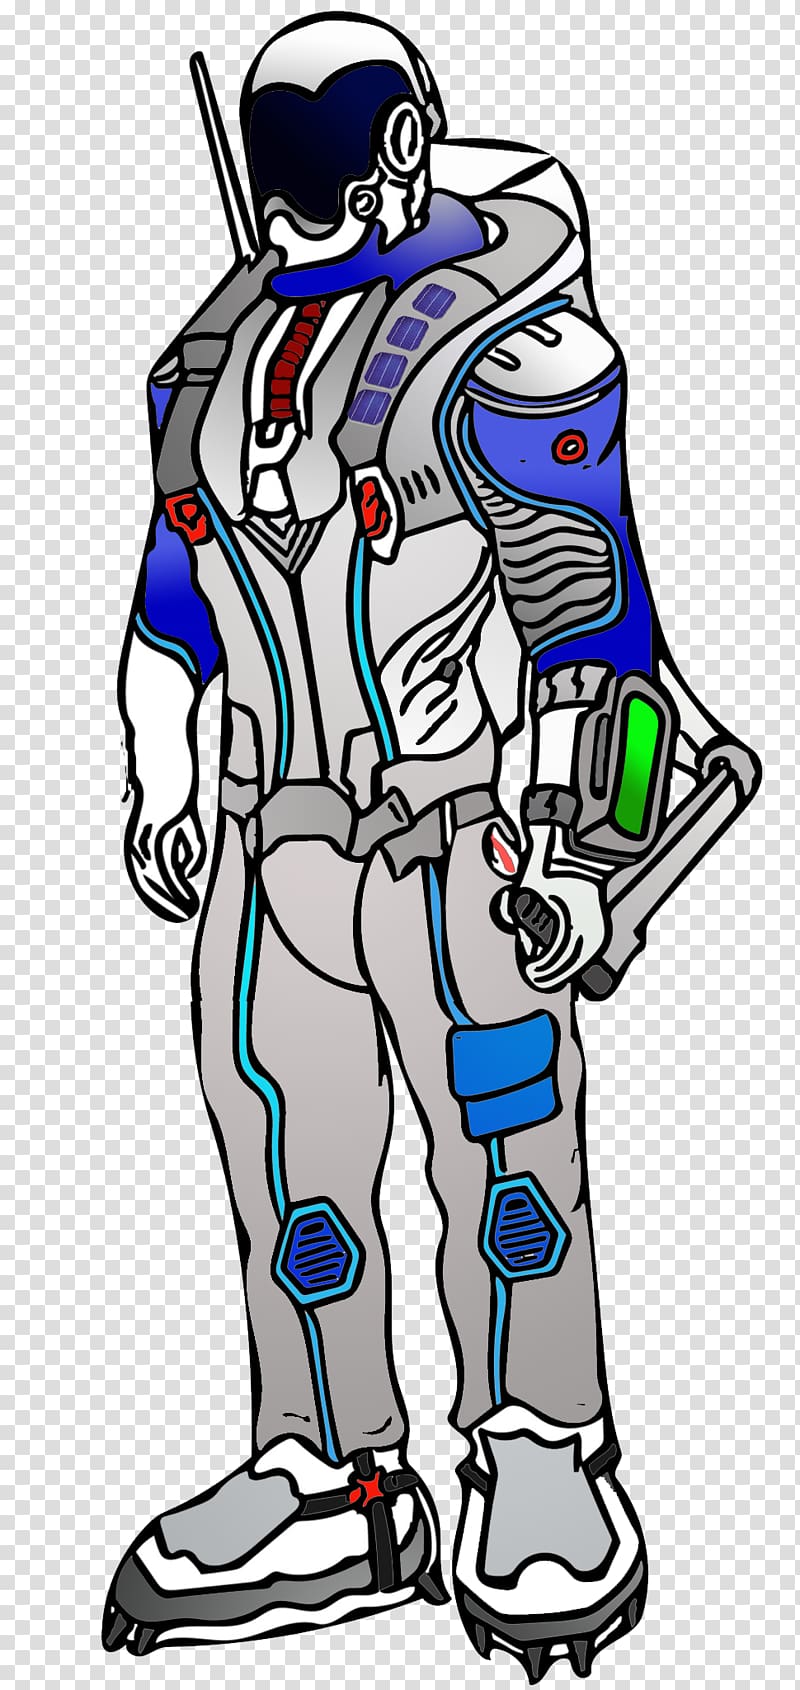 Headgear Uniform Costume , spacesuit transparent background PNG clipart